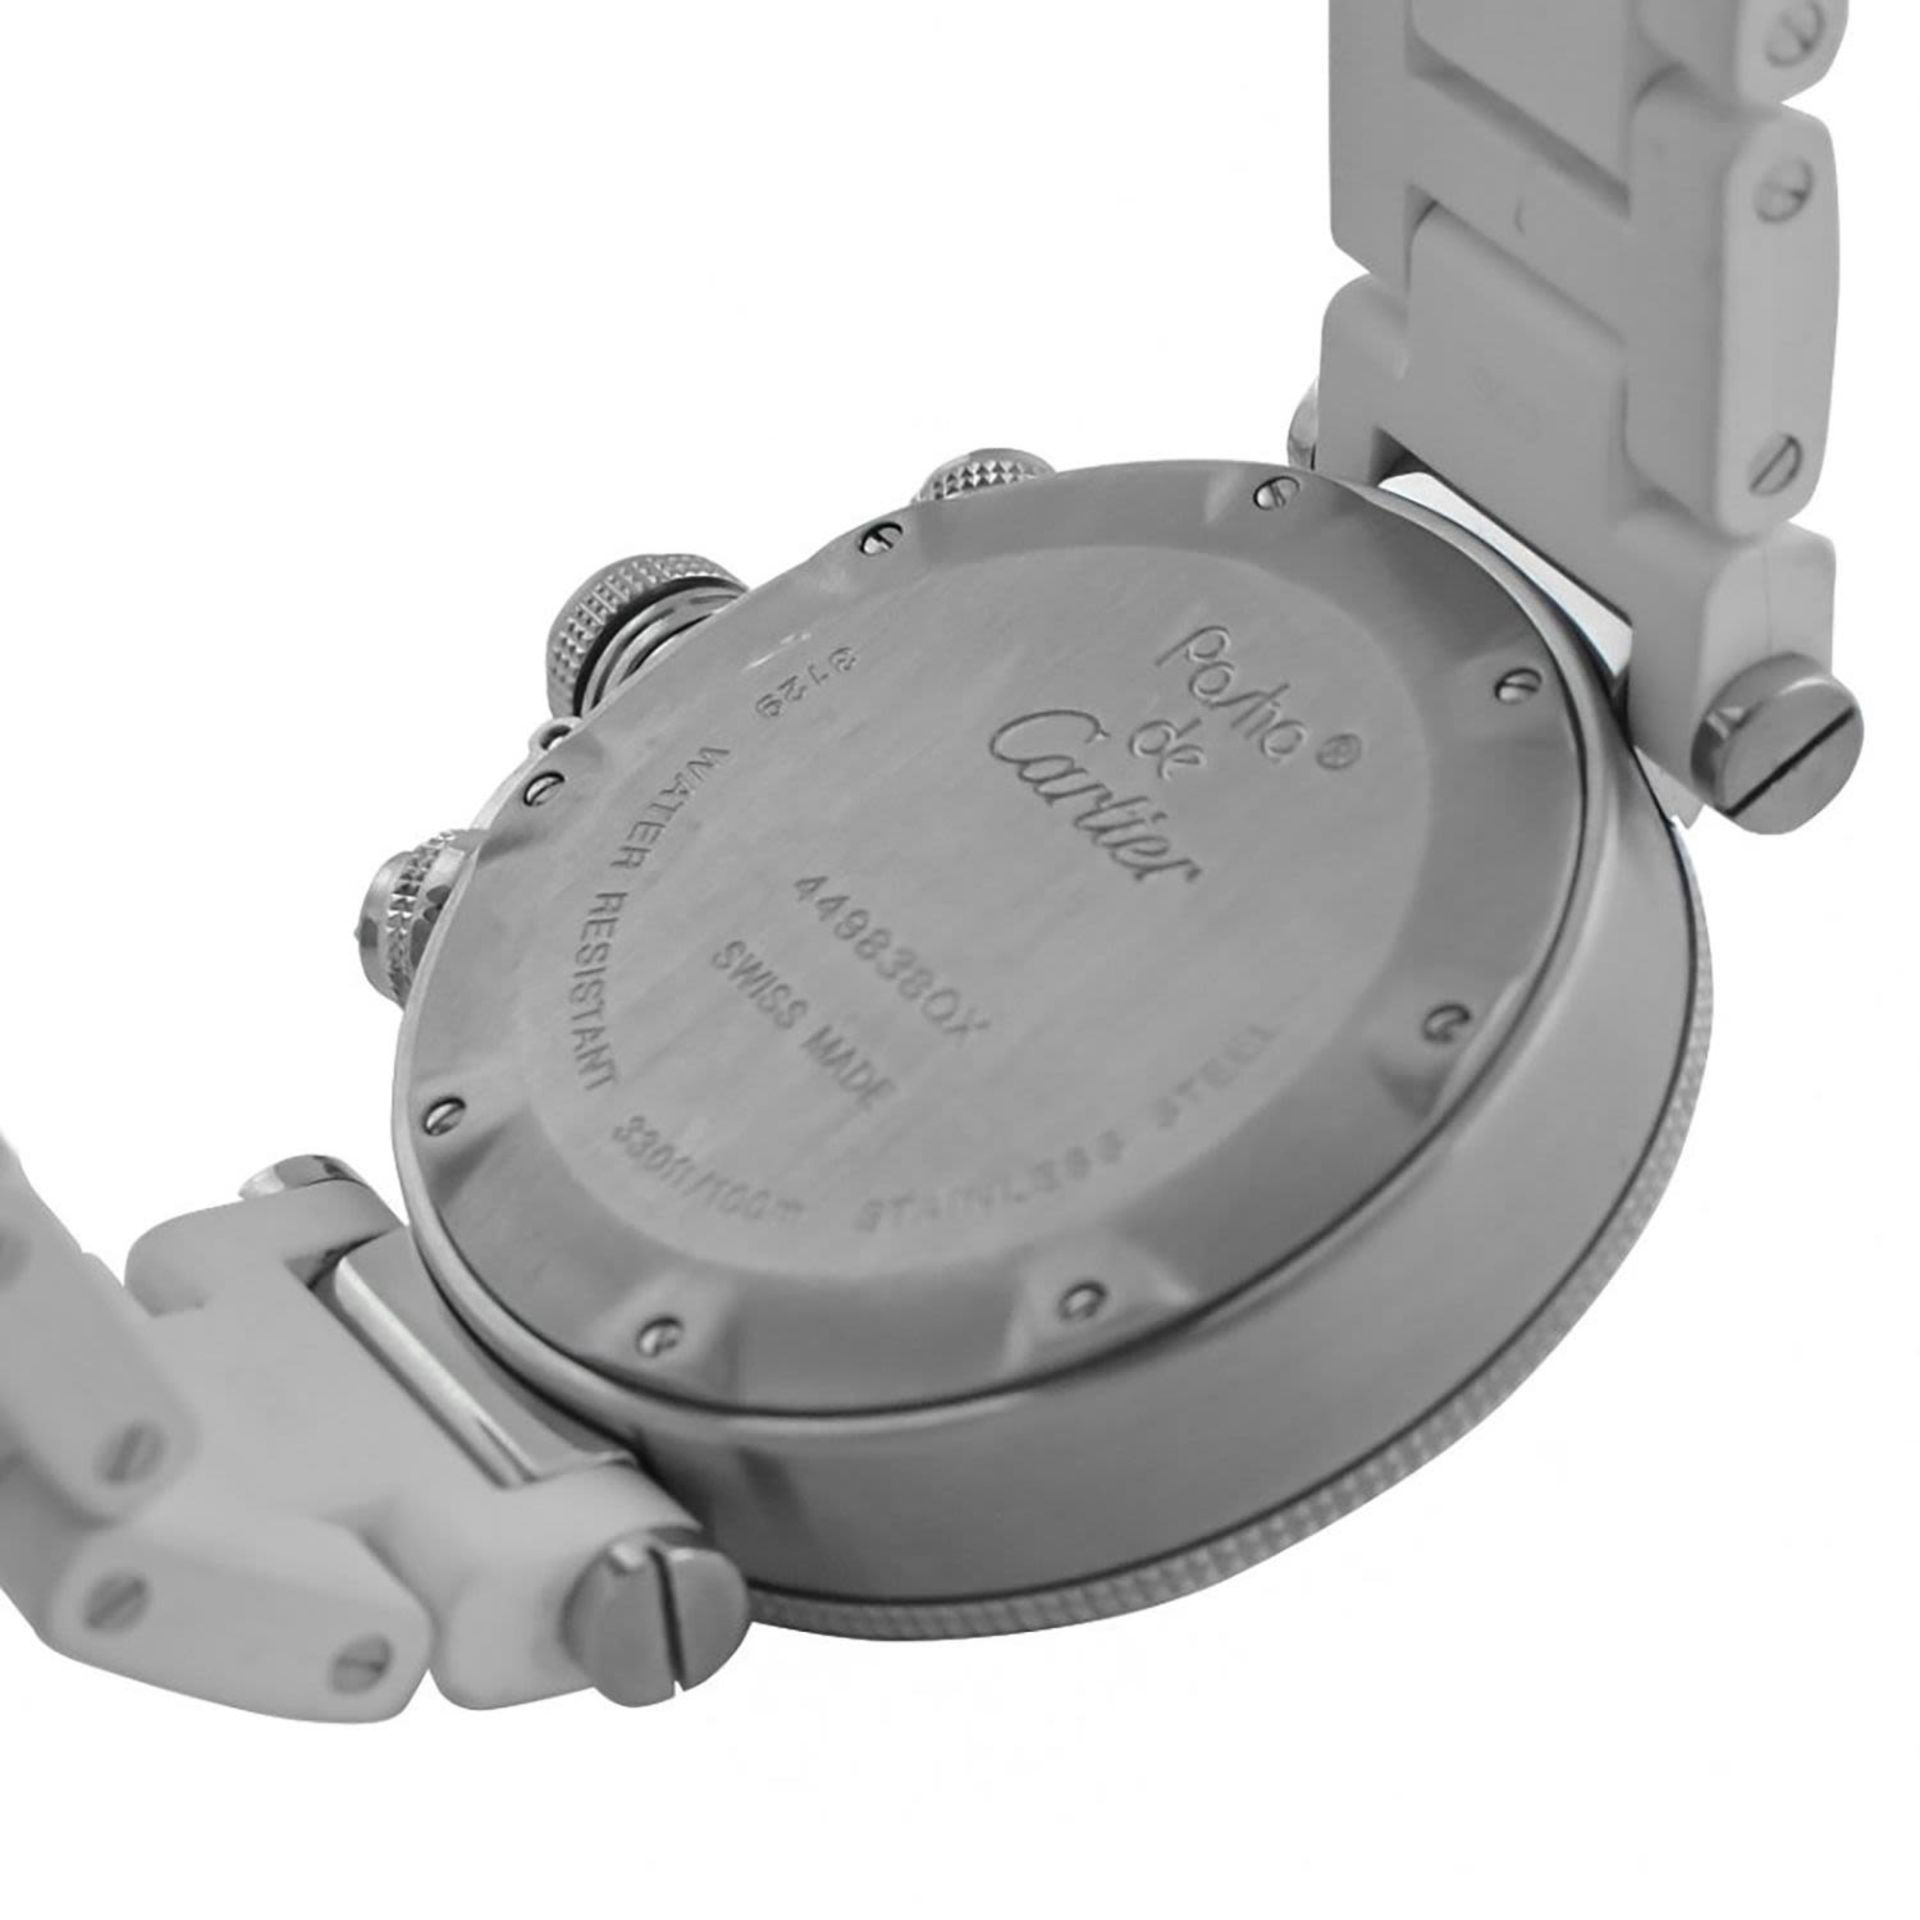 Cartier Pasha Chronograph 42mm Unisex wristwatch, in steel, year 2010 - Bild 5 aus 5